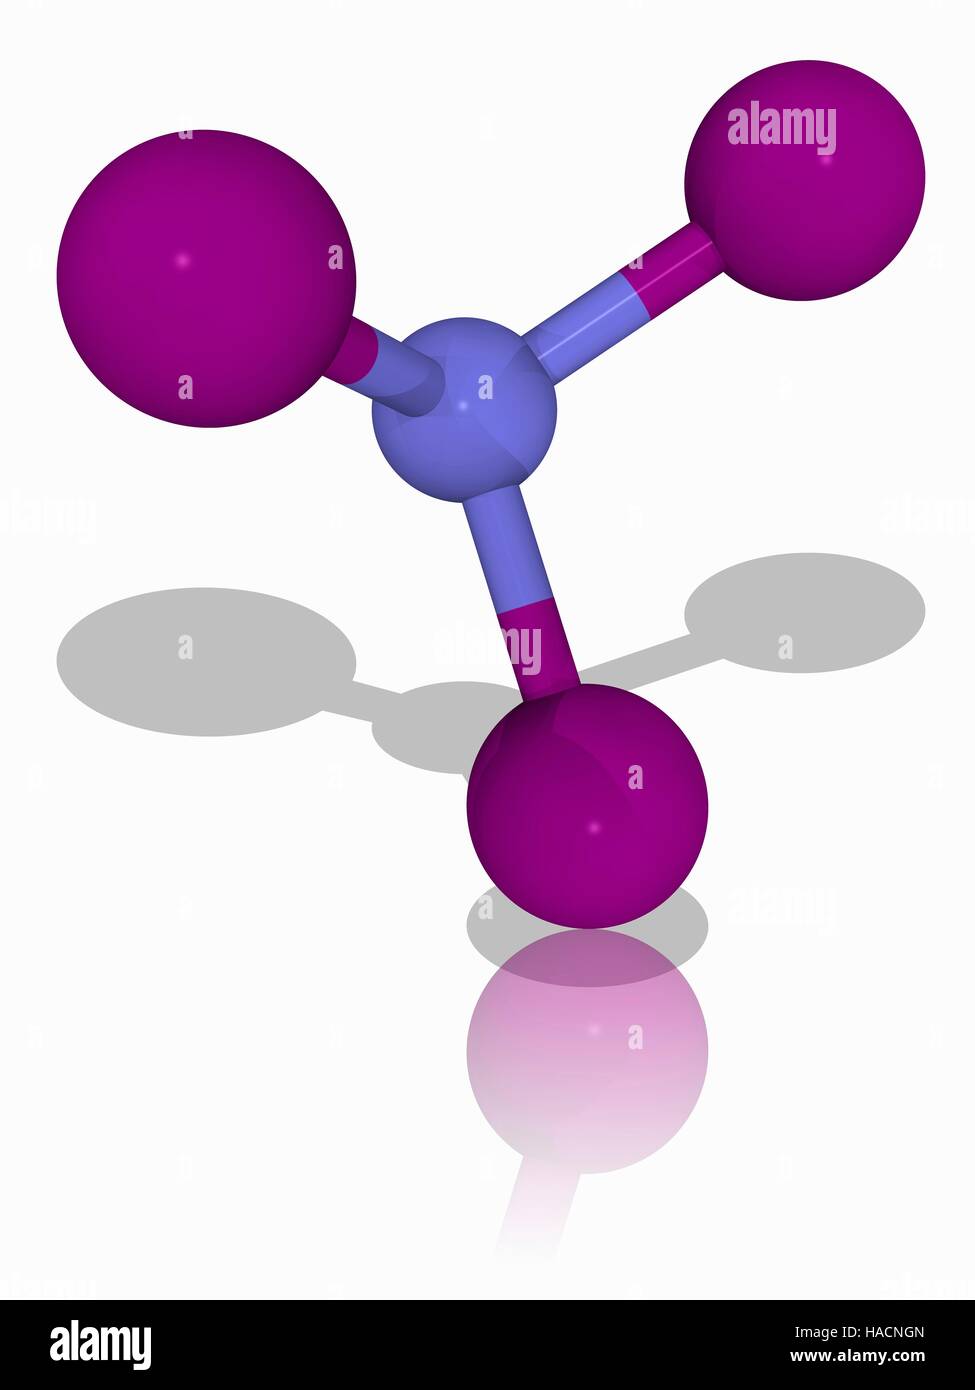 Triyoduro de nitrógeno. Modelo molecular del explosivo químico triyoduro de nitrógeno (N.I3). Este explosivo es extremadamente sensible a las perturbaciones. Los átomos son representados como esferas y están codificados por color: nitrógeno (azul) y el yodo (violeta). Ilustración. Foto de stock